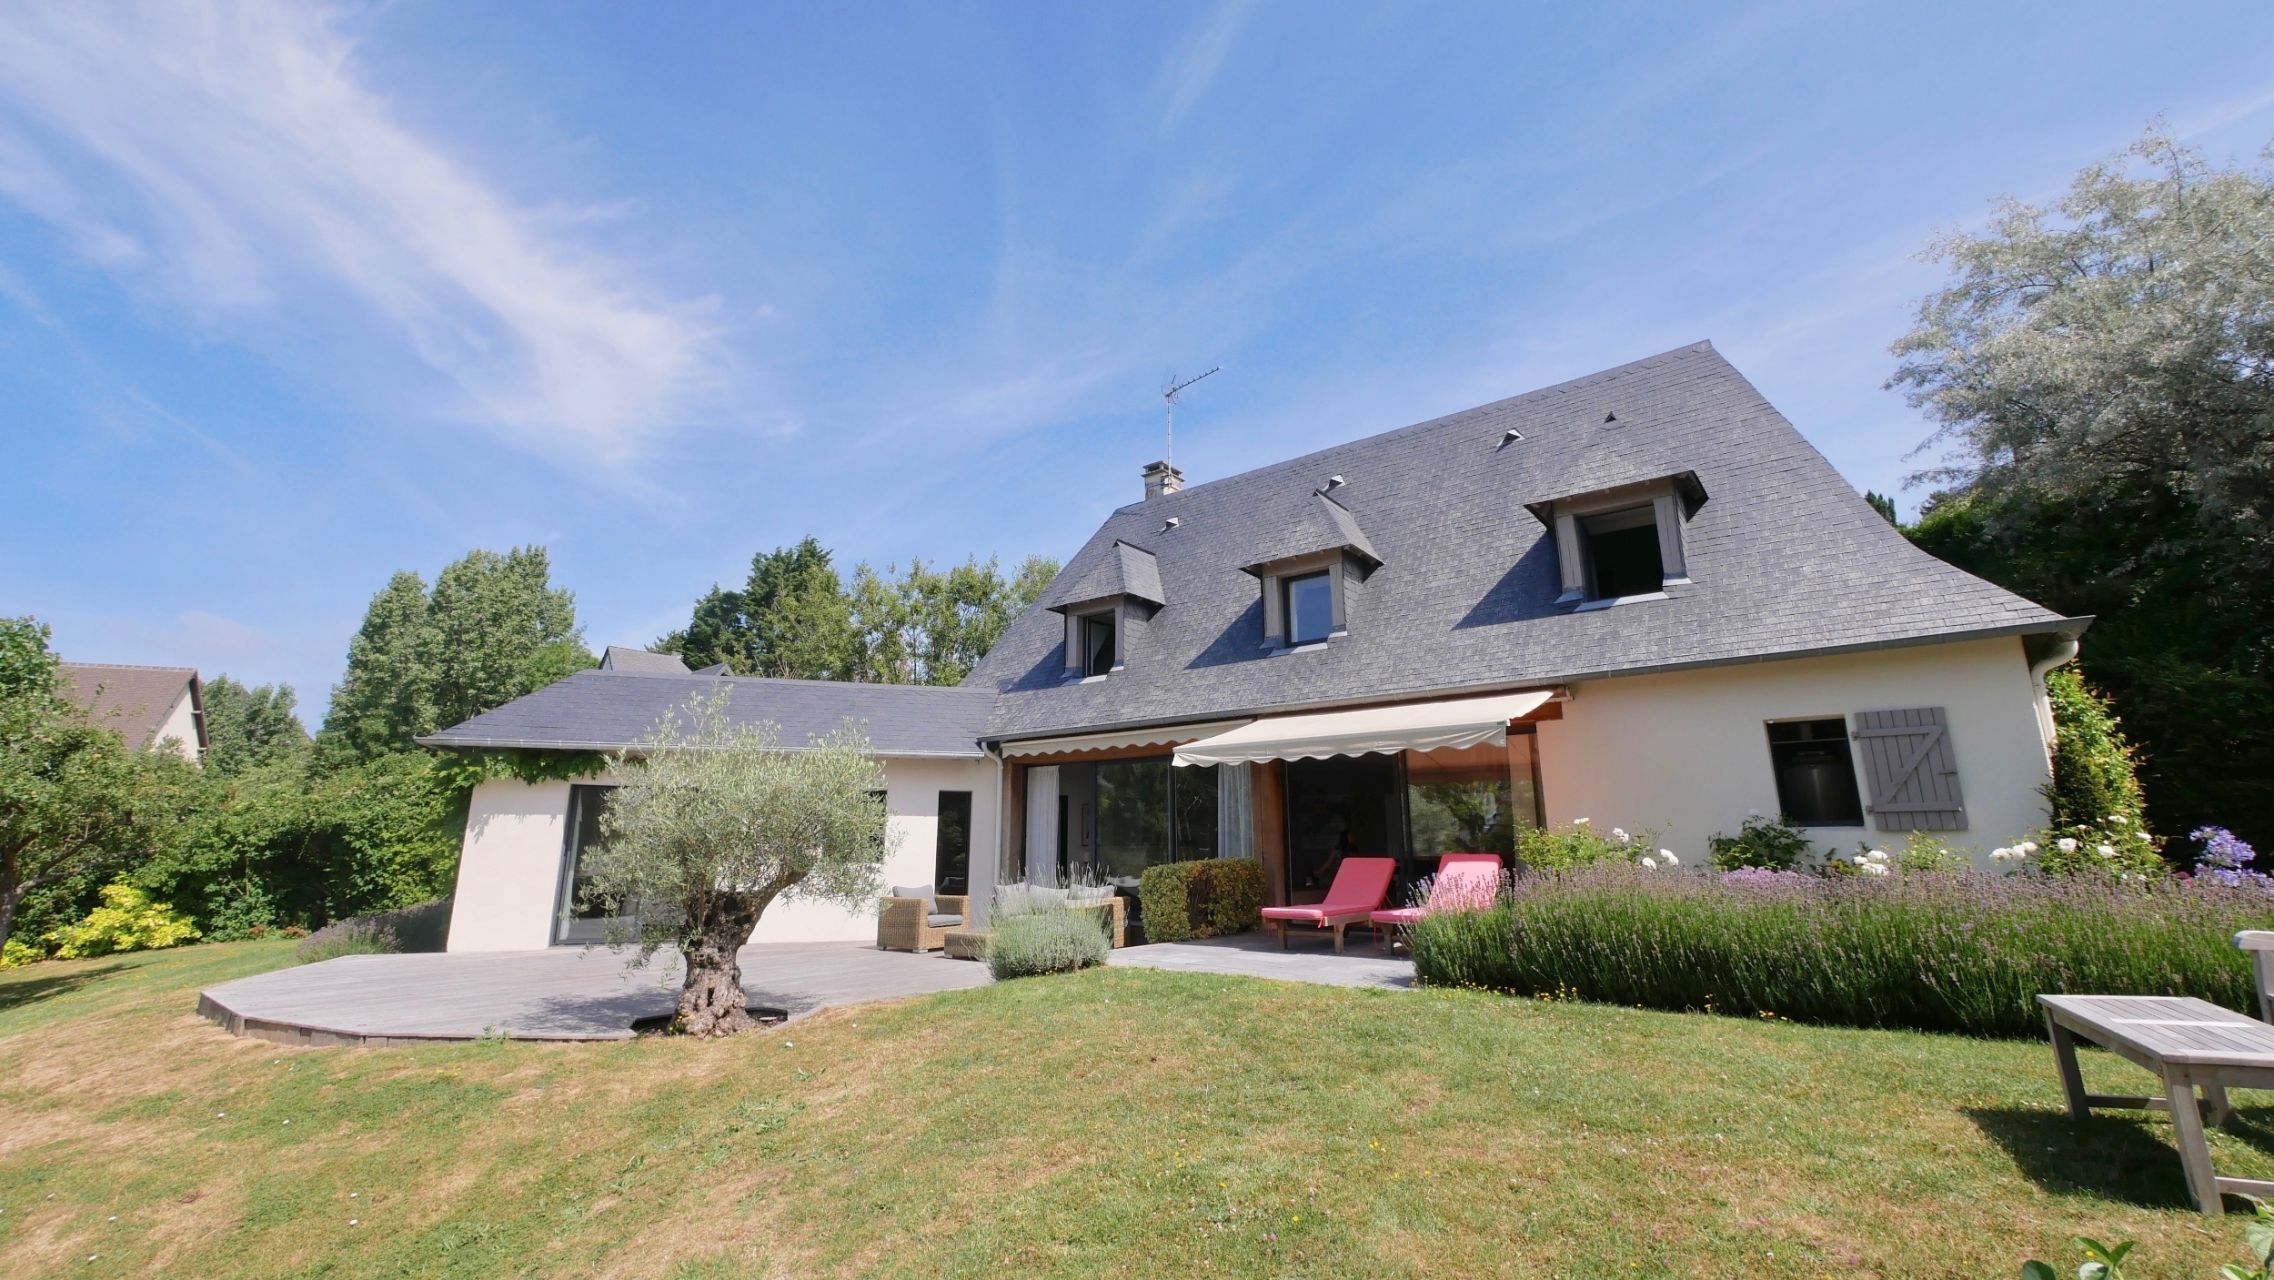 Location saisonnière Maison contemporaine Blonville-sur-Mer (14910) 170 m²